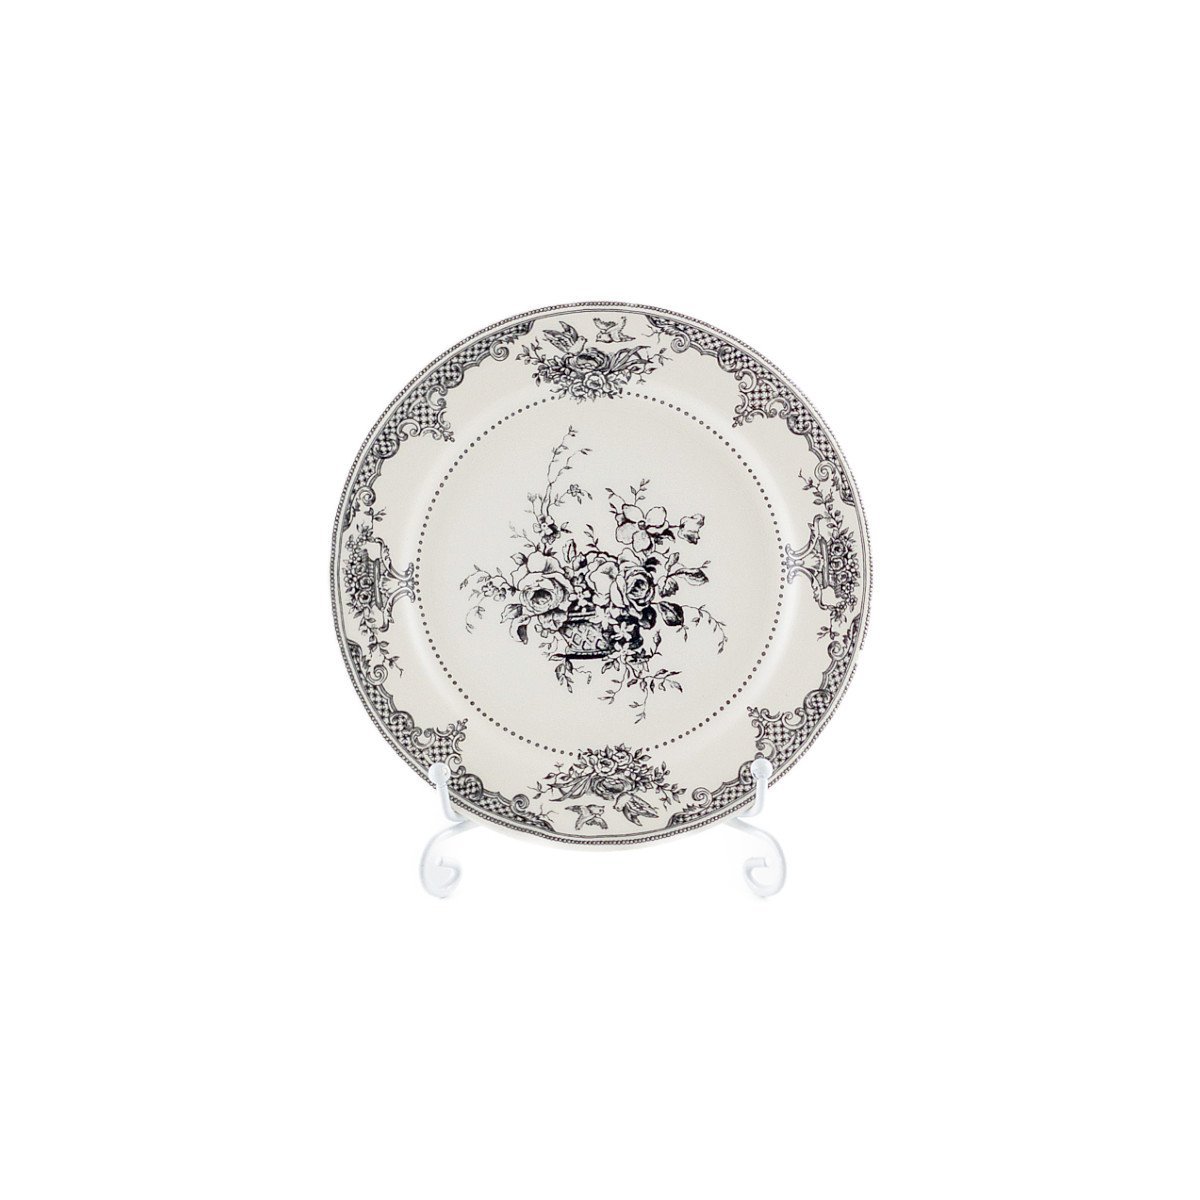 正規輸入品 ジアン フルール・デパルイユ 小皿 ミニプレート 白黒 食器 花柄 バラ アンティーク風 ボックス入